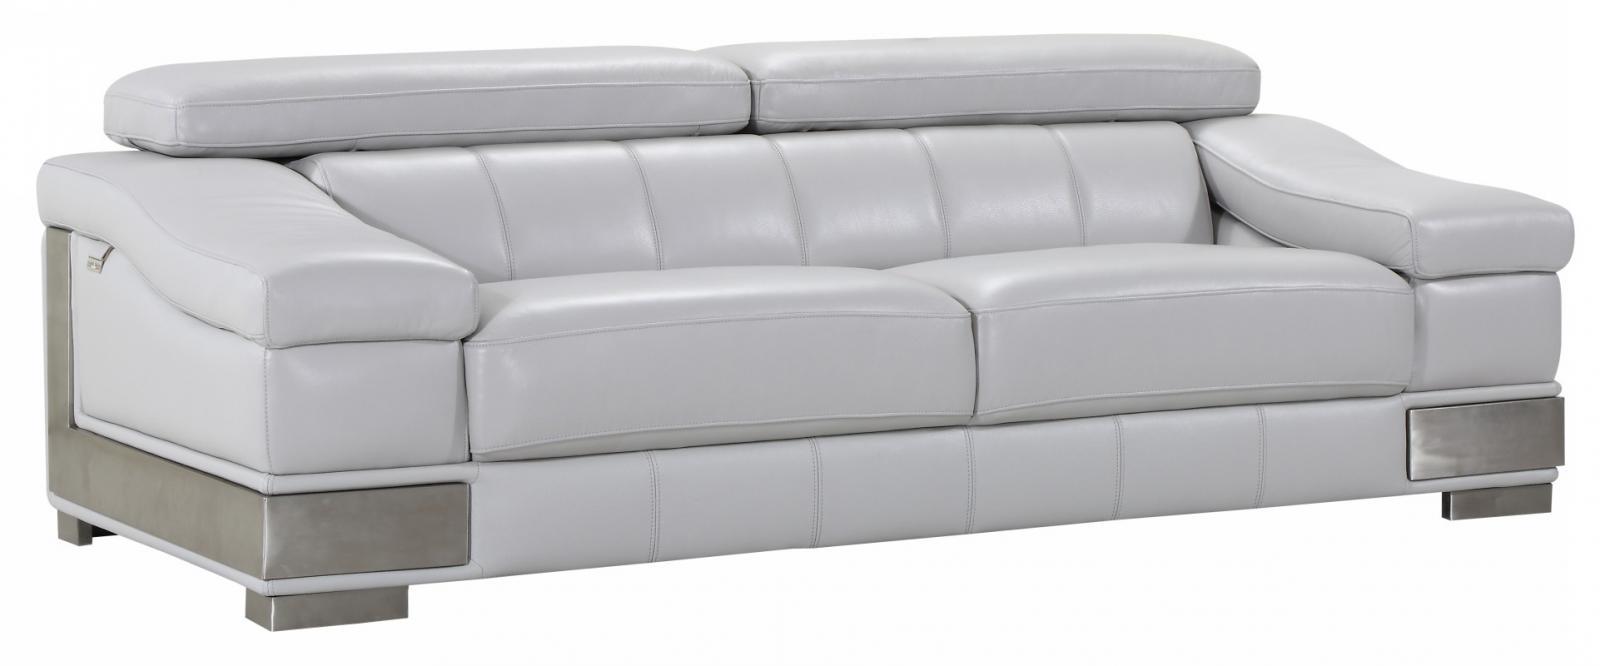 Contemporary Sofa Hawkesbury Common SKU: ORNL4839 in Light Gray Genuine Leather